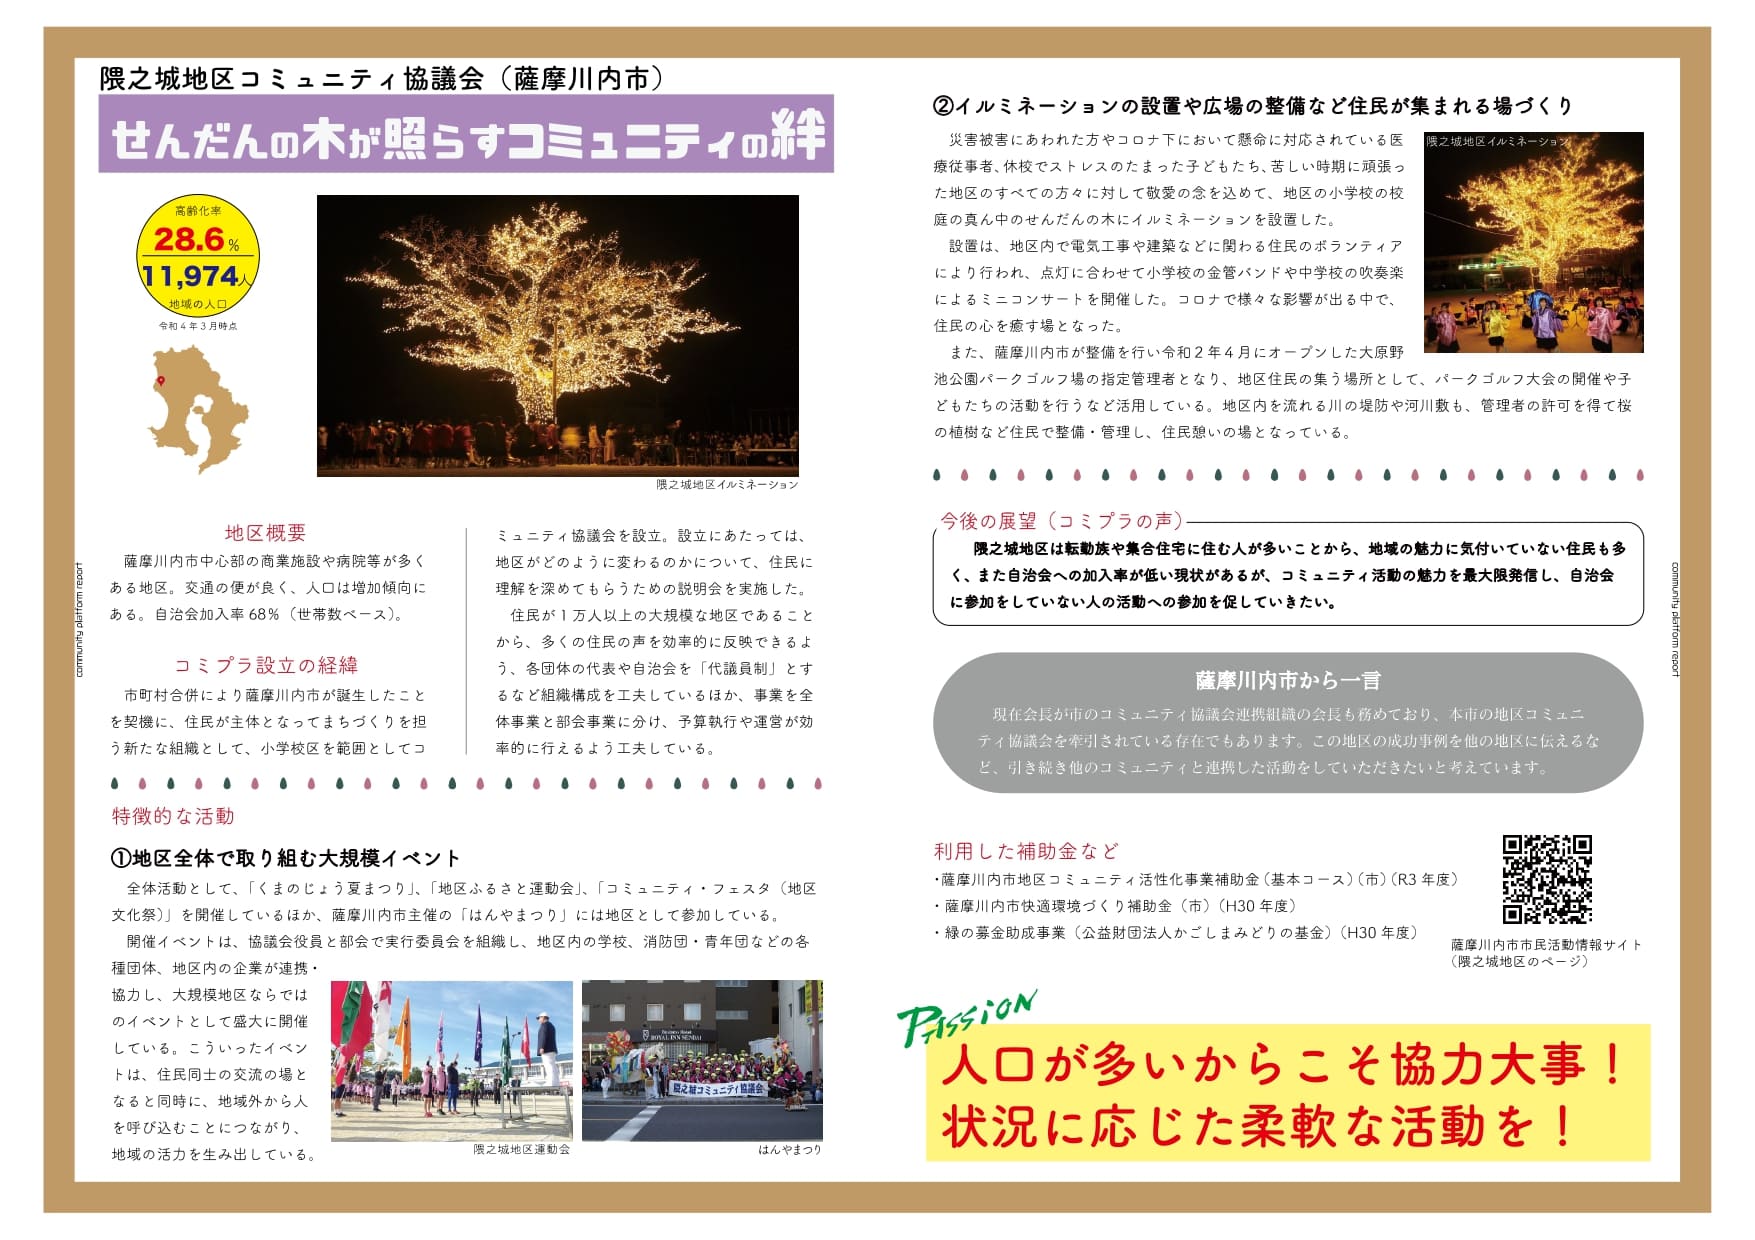 隈之城地区コミュニティ協議会(薩摩川内市)の「せんだんの木が照らすコミュニティの絆」の説明の画像